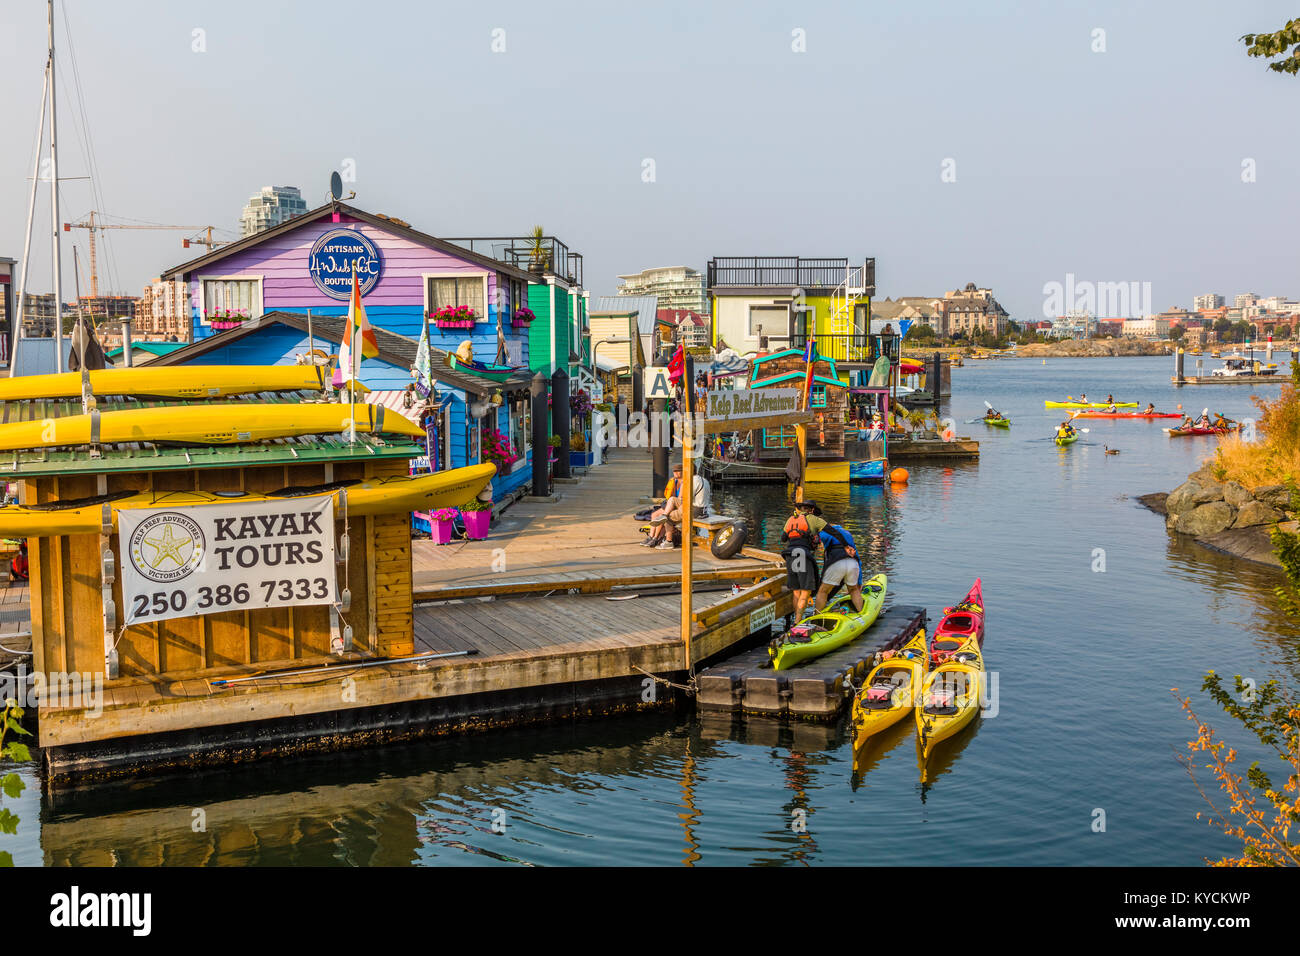 Fisherman's Wharf de Victoria Canada une attraction touristique avec des kiosques de nourriture, de boutiques uniques et de maisons flottantes ou houseboats Banque D'Images